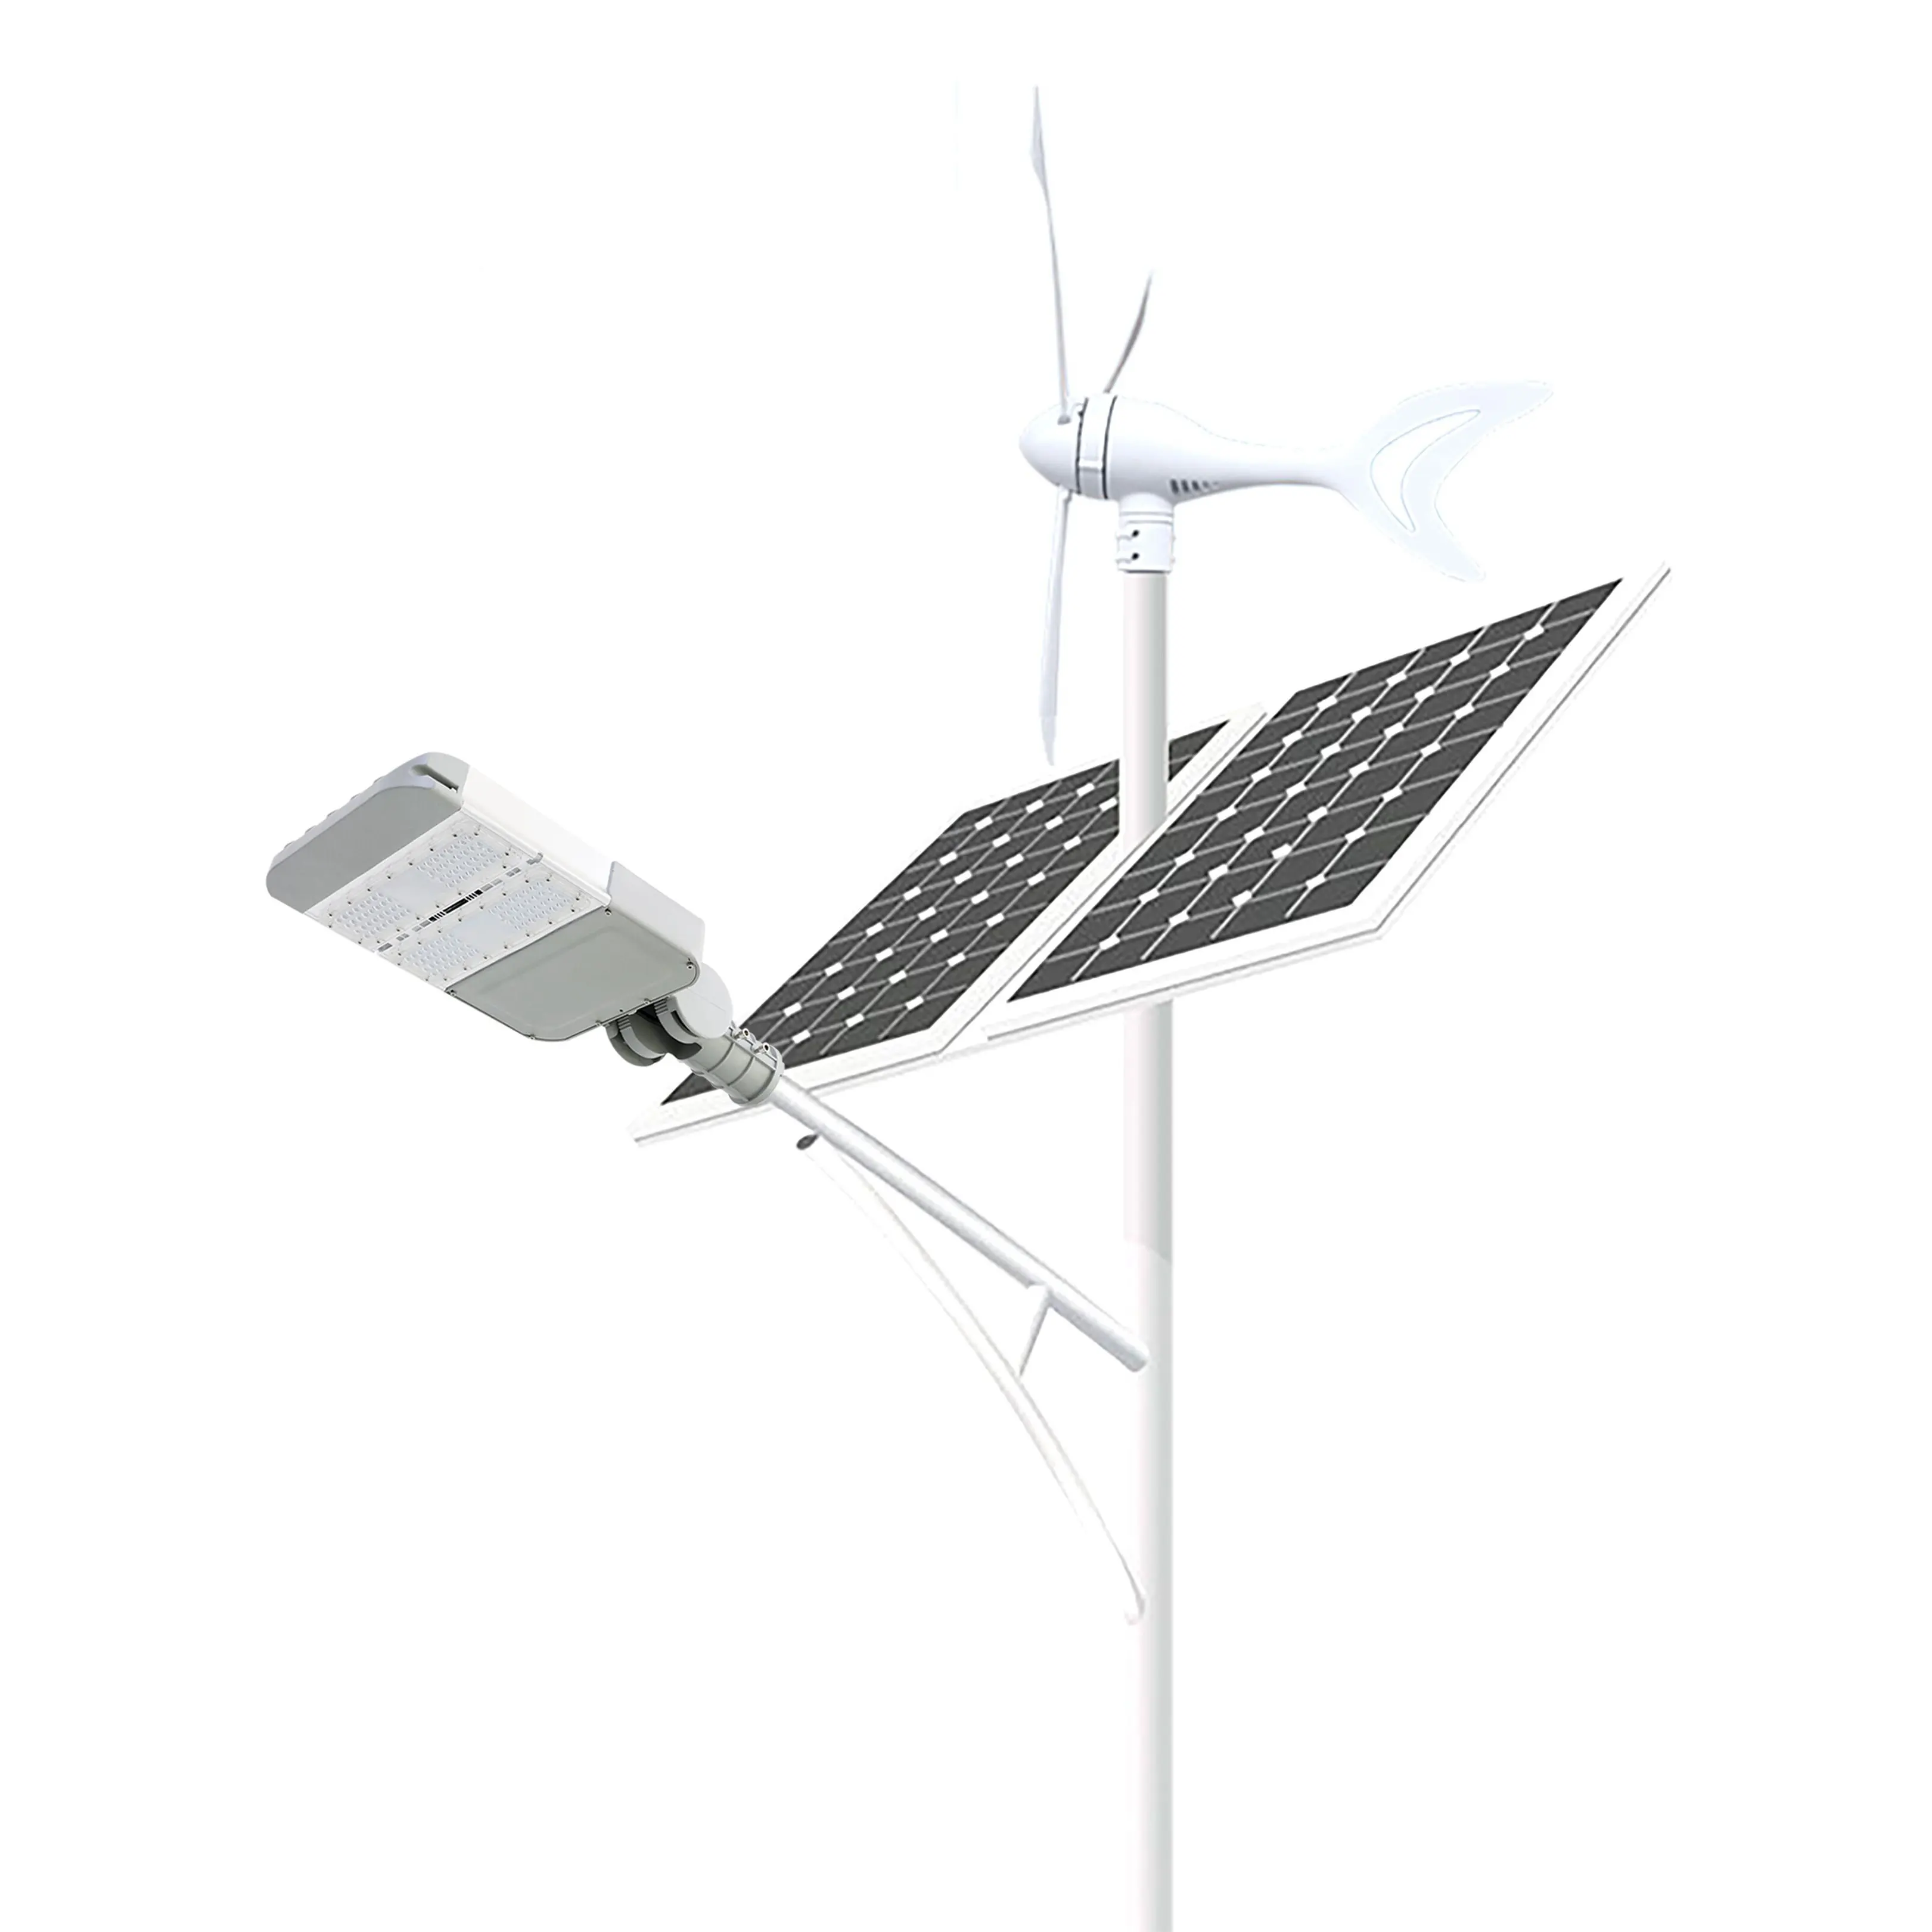 Hepu ausreichender Strom für 12 Stunden voller Helligkeit Wind-Hybrid-Solar-Straßenlampe, All-in-One Solar-LED-Straßenlampe 40 Watt Lampe